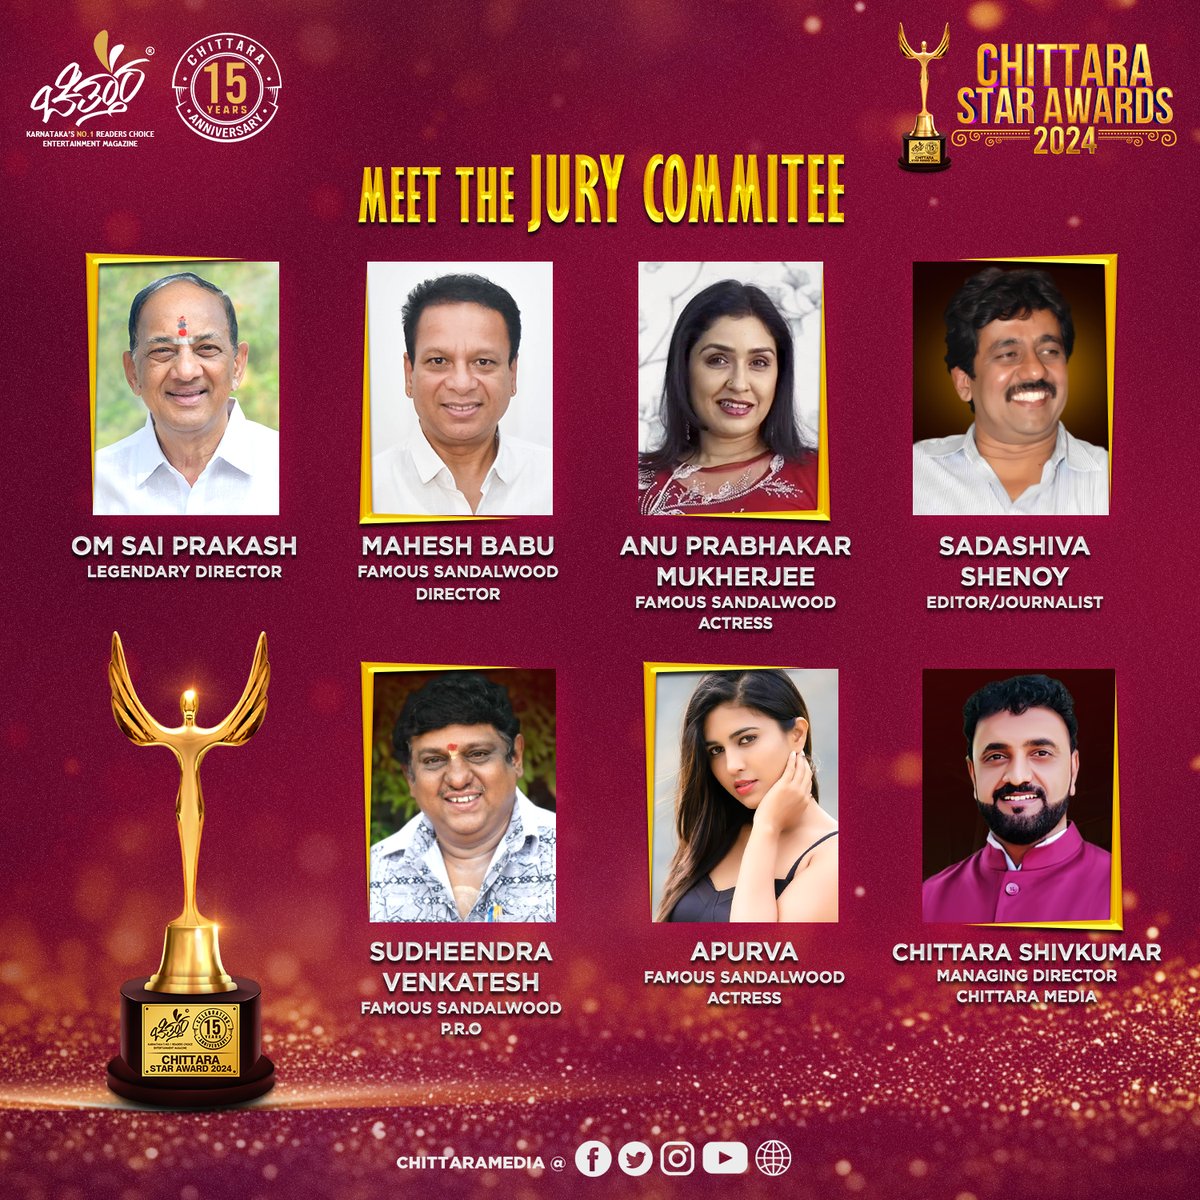 Meet Our Esteemed Jury Pannel For #ChittaraStarAwards2024 😍 #OmSaiPrakash #MaheshBabu #AnuPrabhukarMukherjee #SadashivaShenoy #SudheeendraVenkatesh #Apurva #ChittaraShivakumar